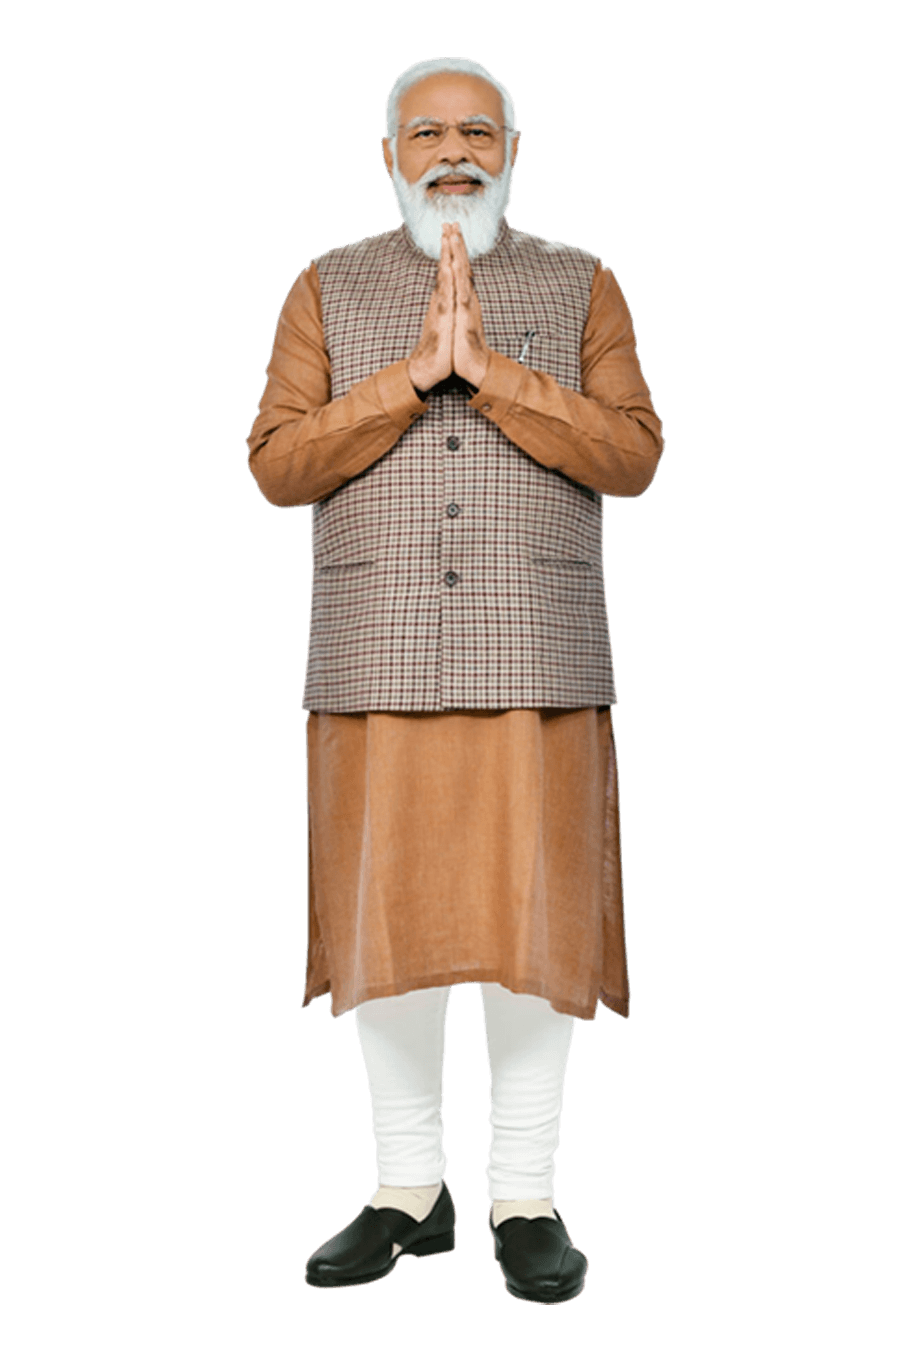 PM Narendra Modi Full Photo png